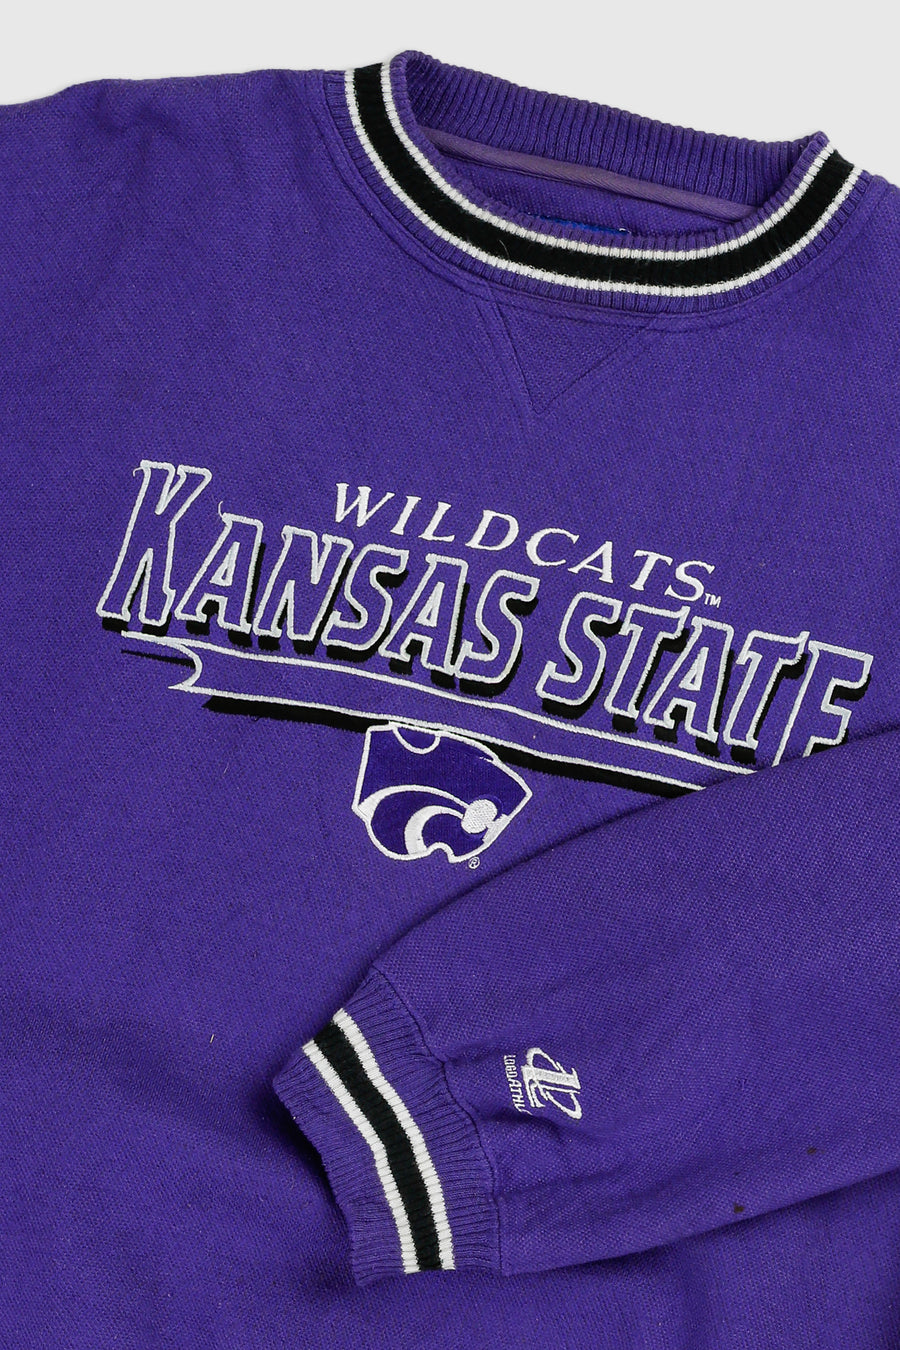 Vintage Kansas City Wildcats Sweatshirt - L